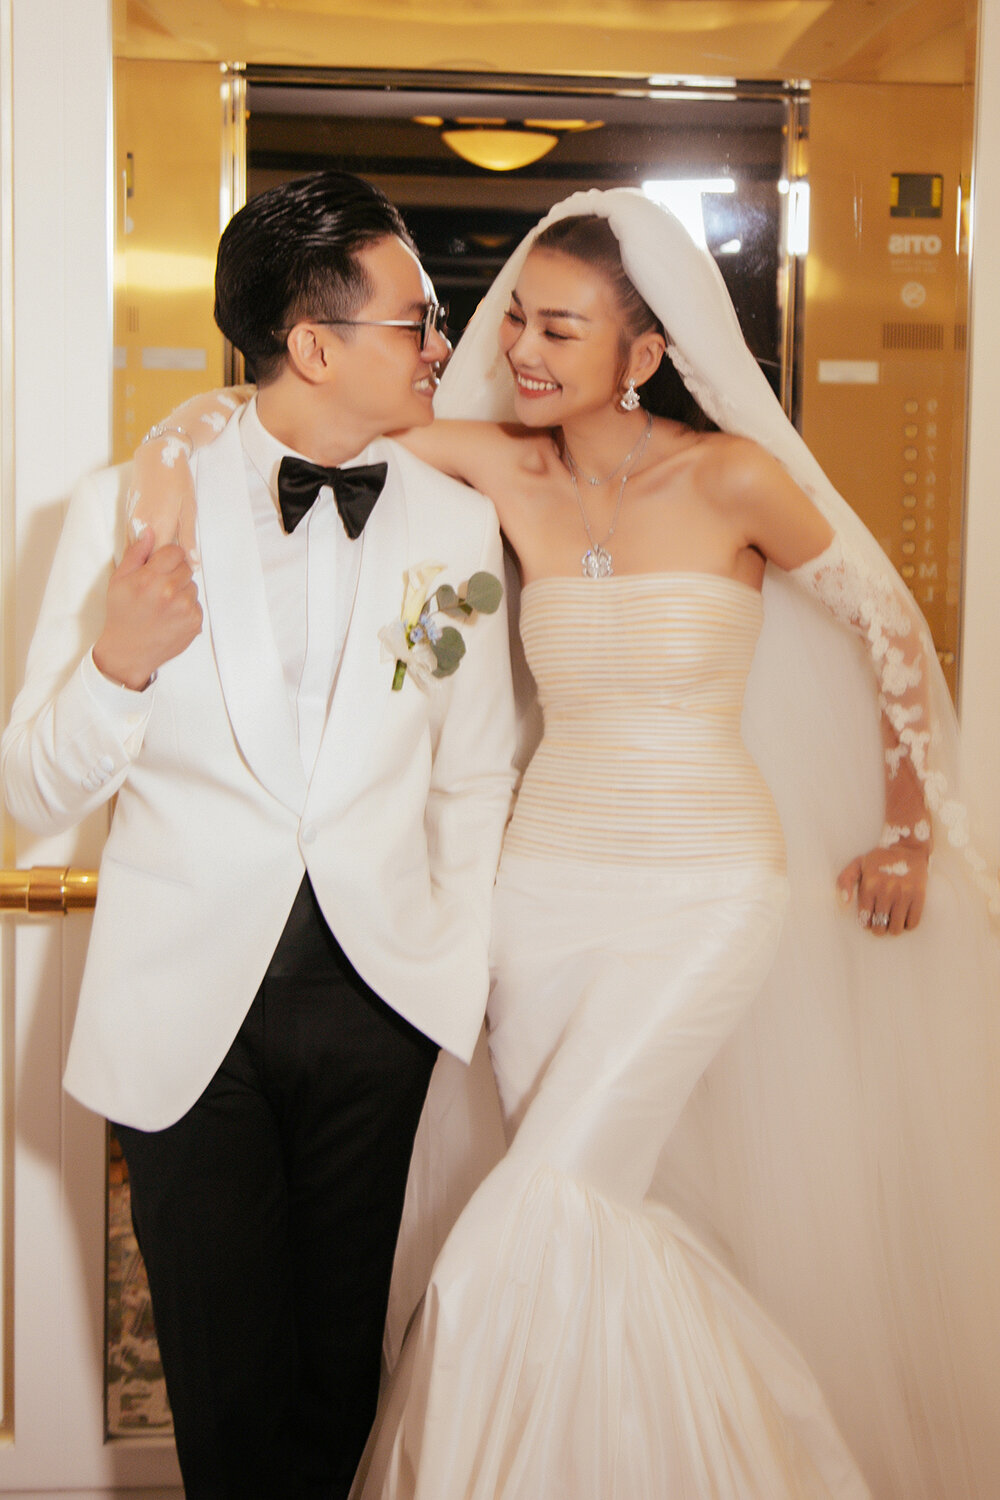  Thanh Hằng đeo trang sức 10 tỷ đồng trong đám cưới với chồng nhạc trưởng - 11